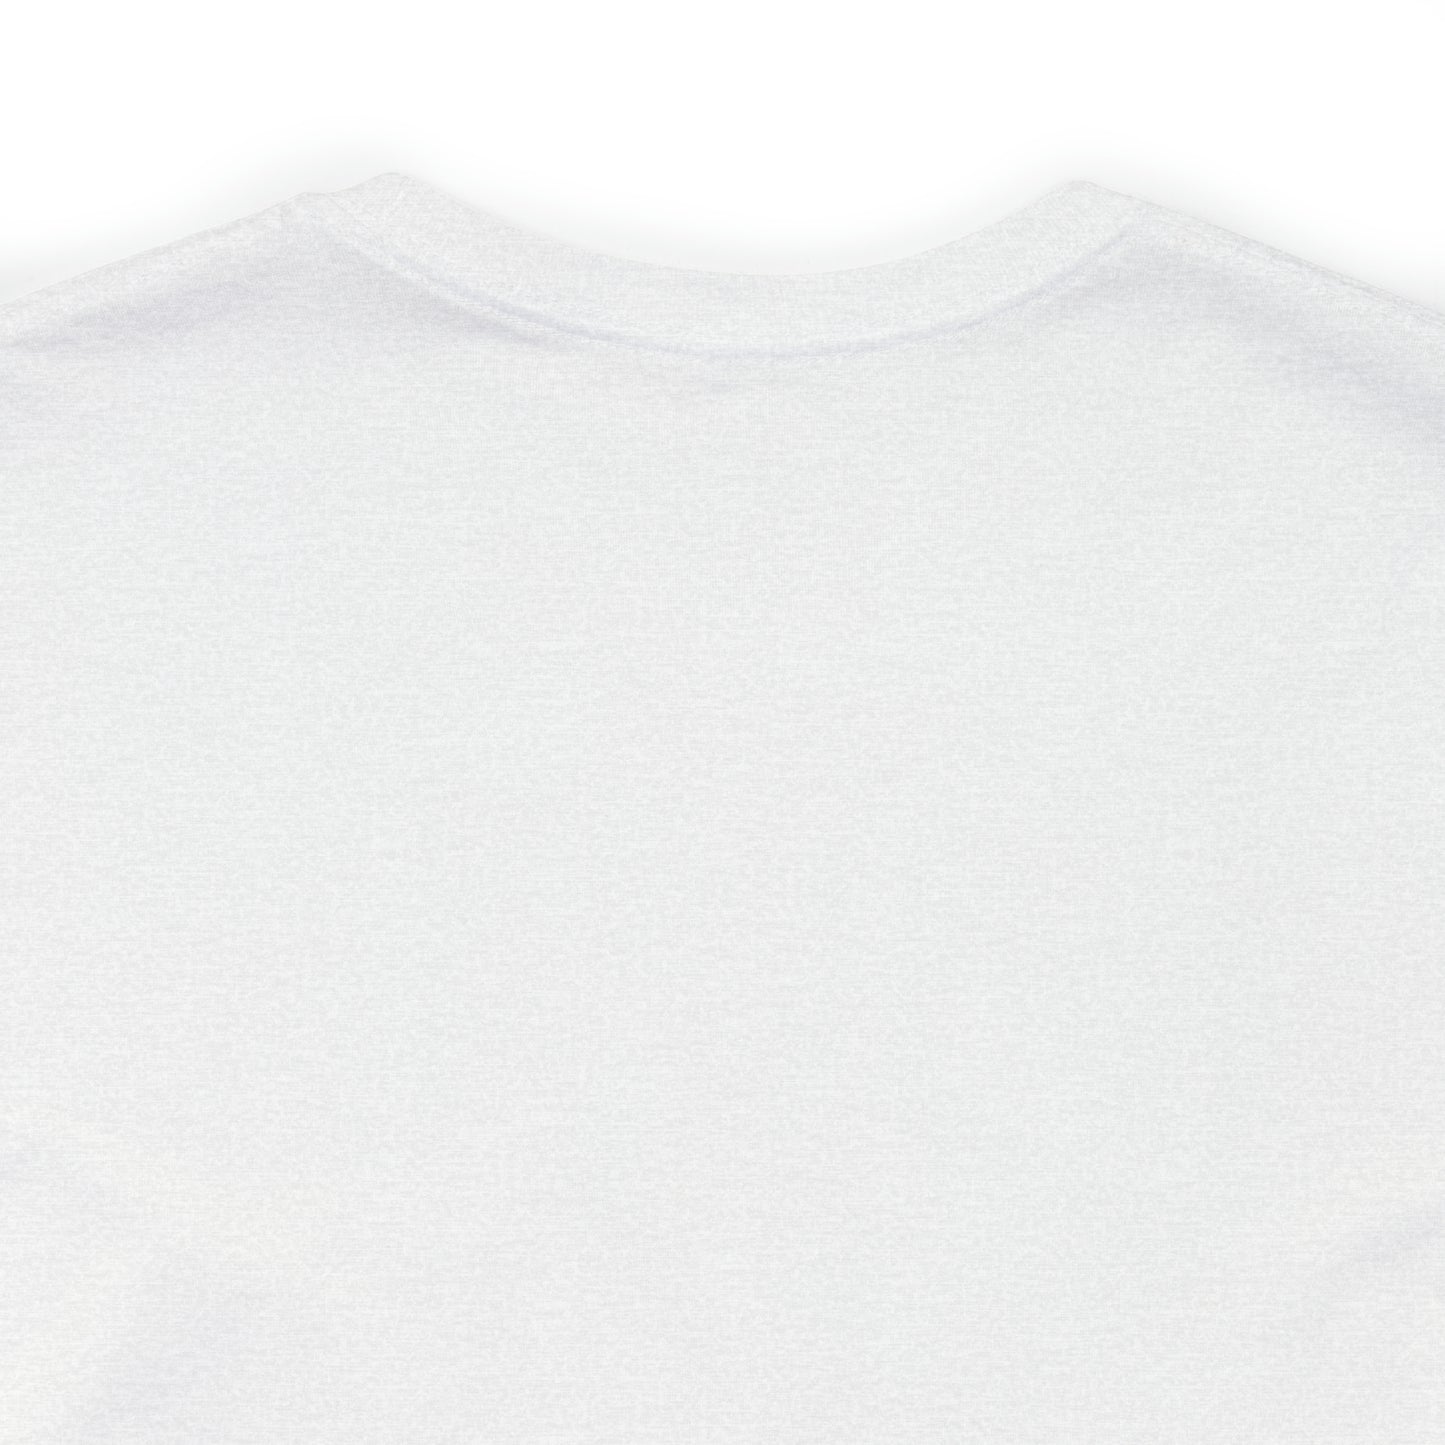 Haverhill, Mass Pickleball Short Sleeve T-Shirt